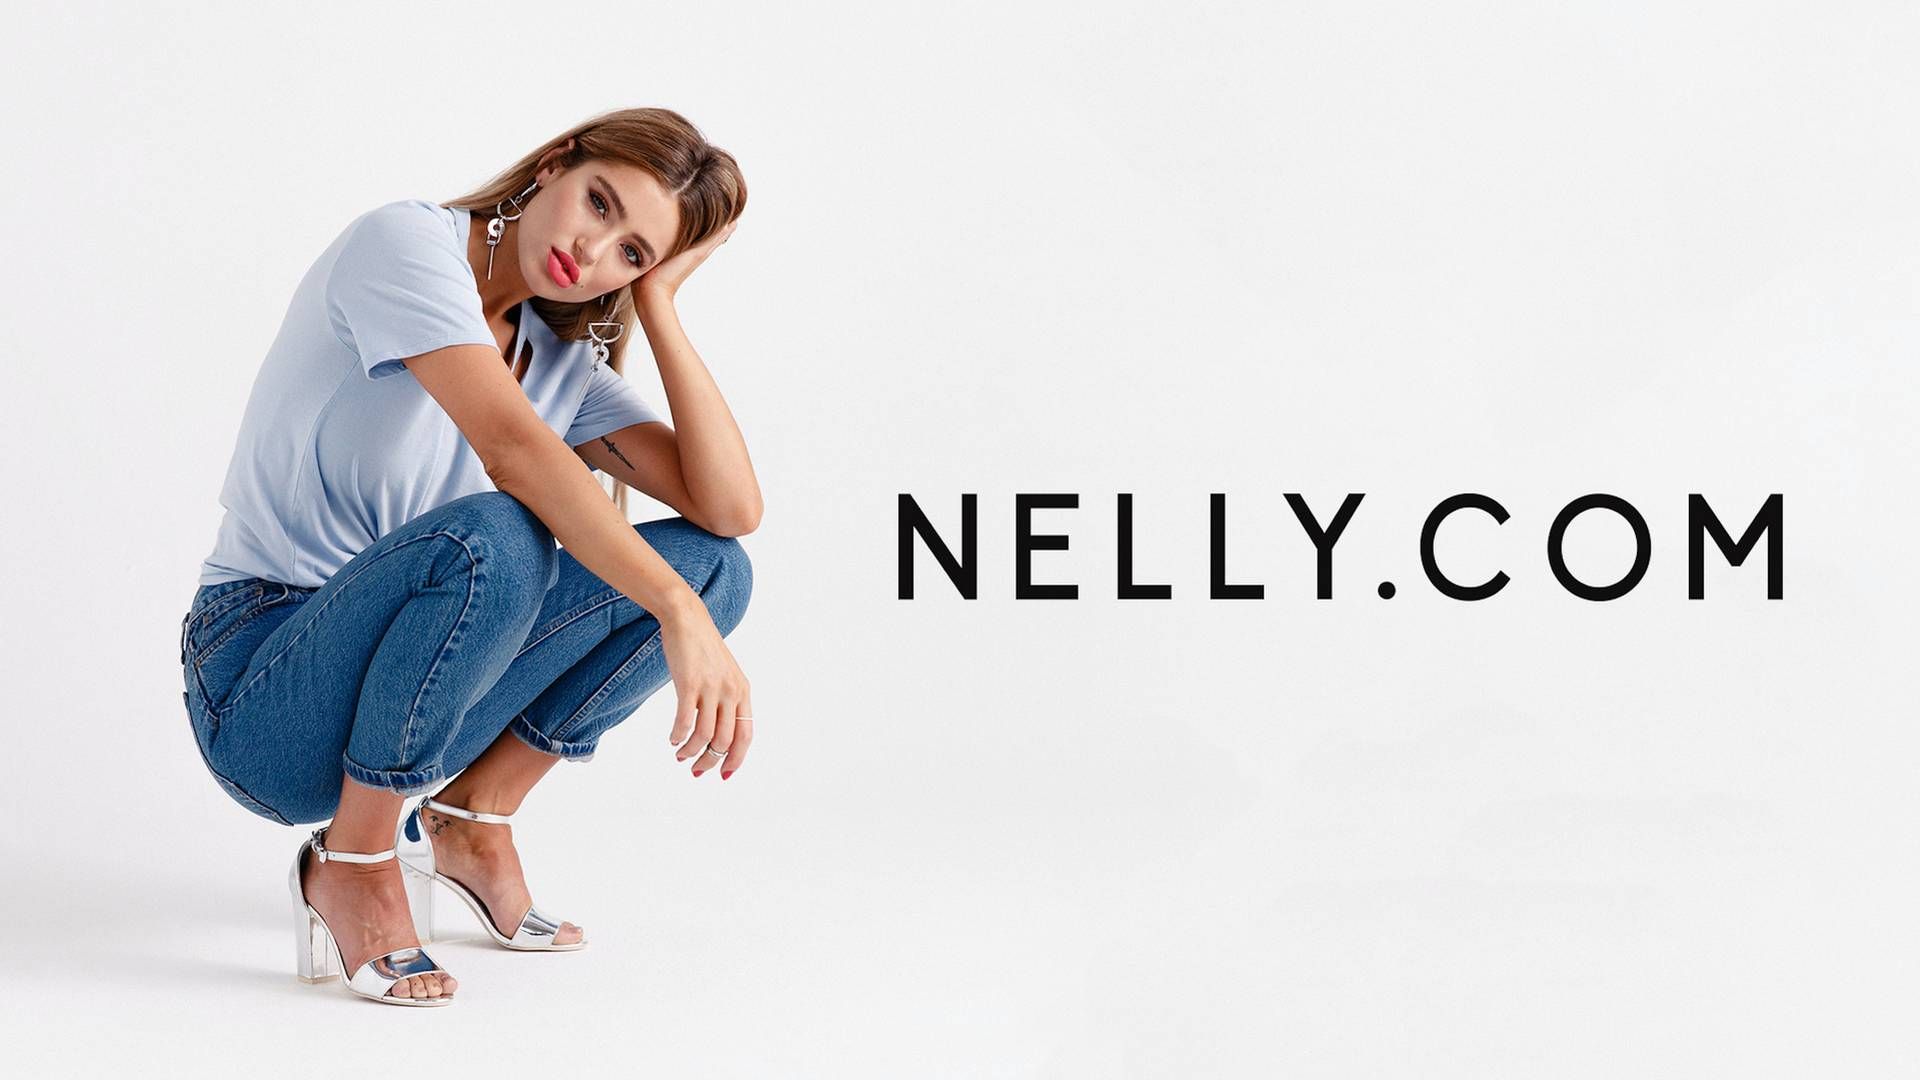 Nelly.com blev lanceret i 2004 og er i dag til stede i flere europæiske lande. | Foto: PR/Nelly,com